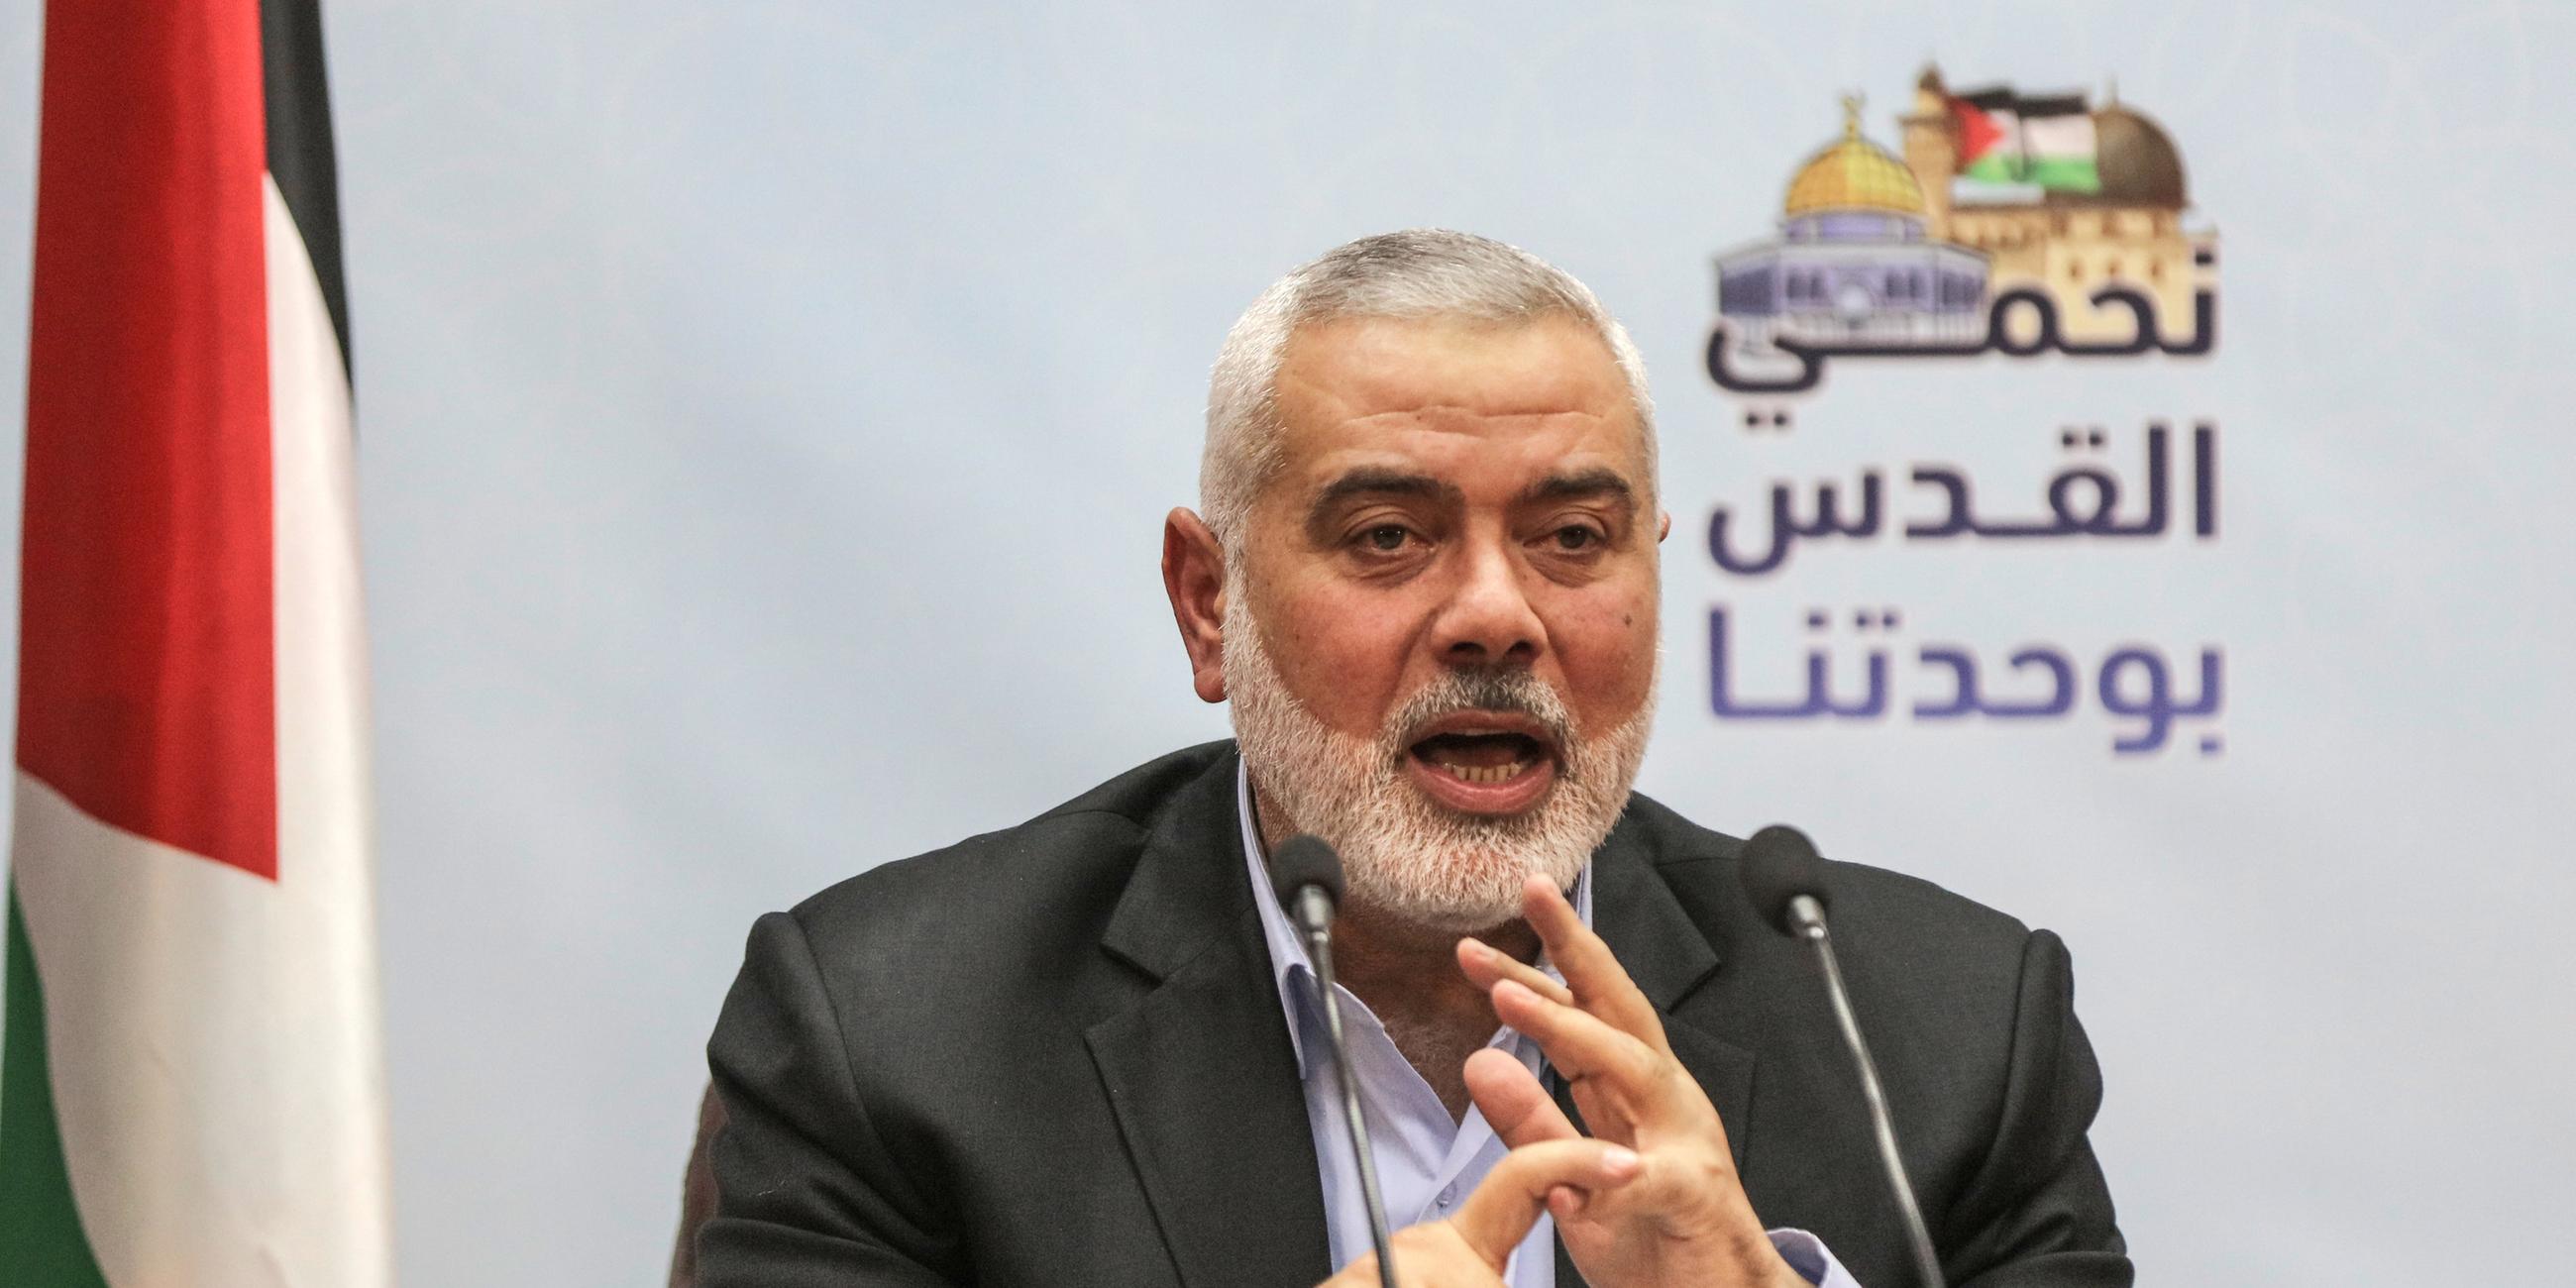 Ismail Hanija, Chef der radikalislamischen Hamas, spricht am 23.01.2018 in Gaza (Palästinensische Autonomiegebiete) während eine Pressekonferenz über die politischen Entwicklungen in der Region.